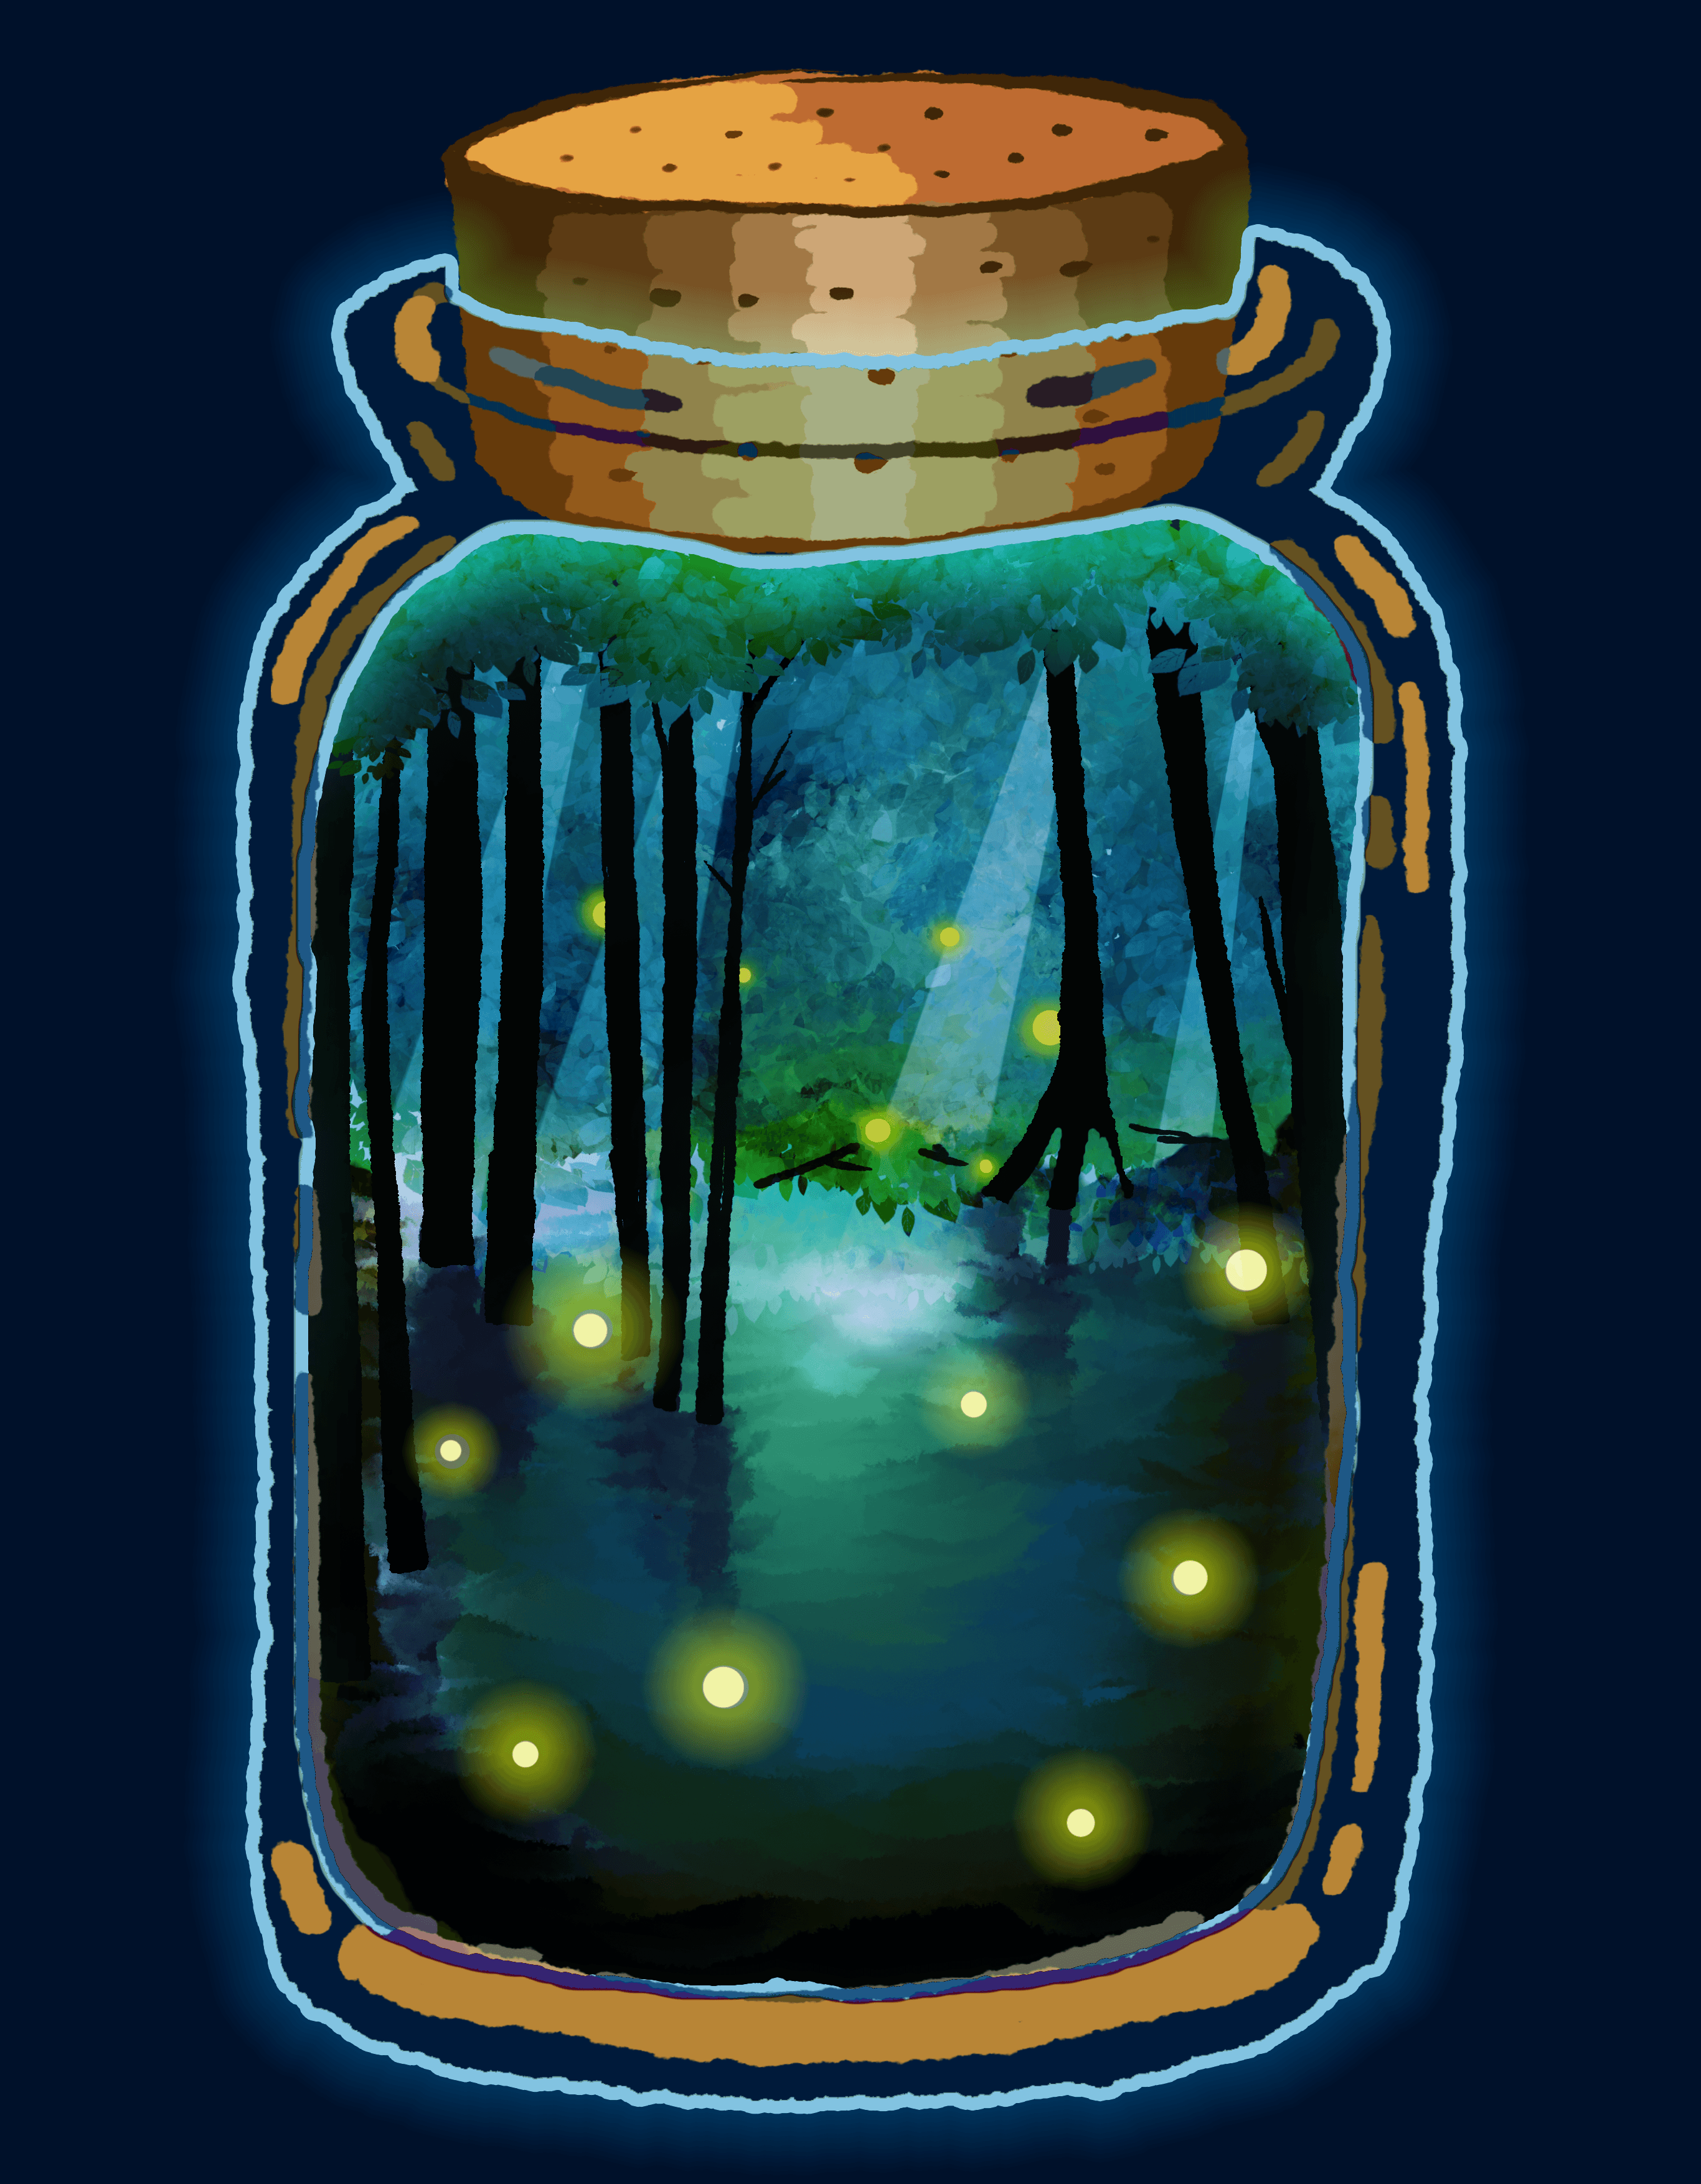 B02-05 Firefly in a bottle